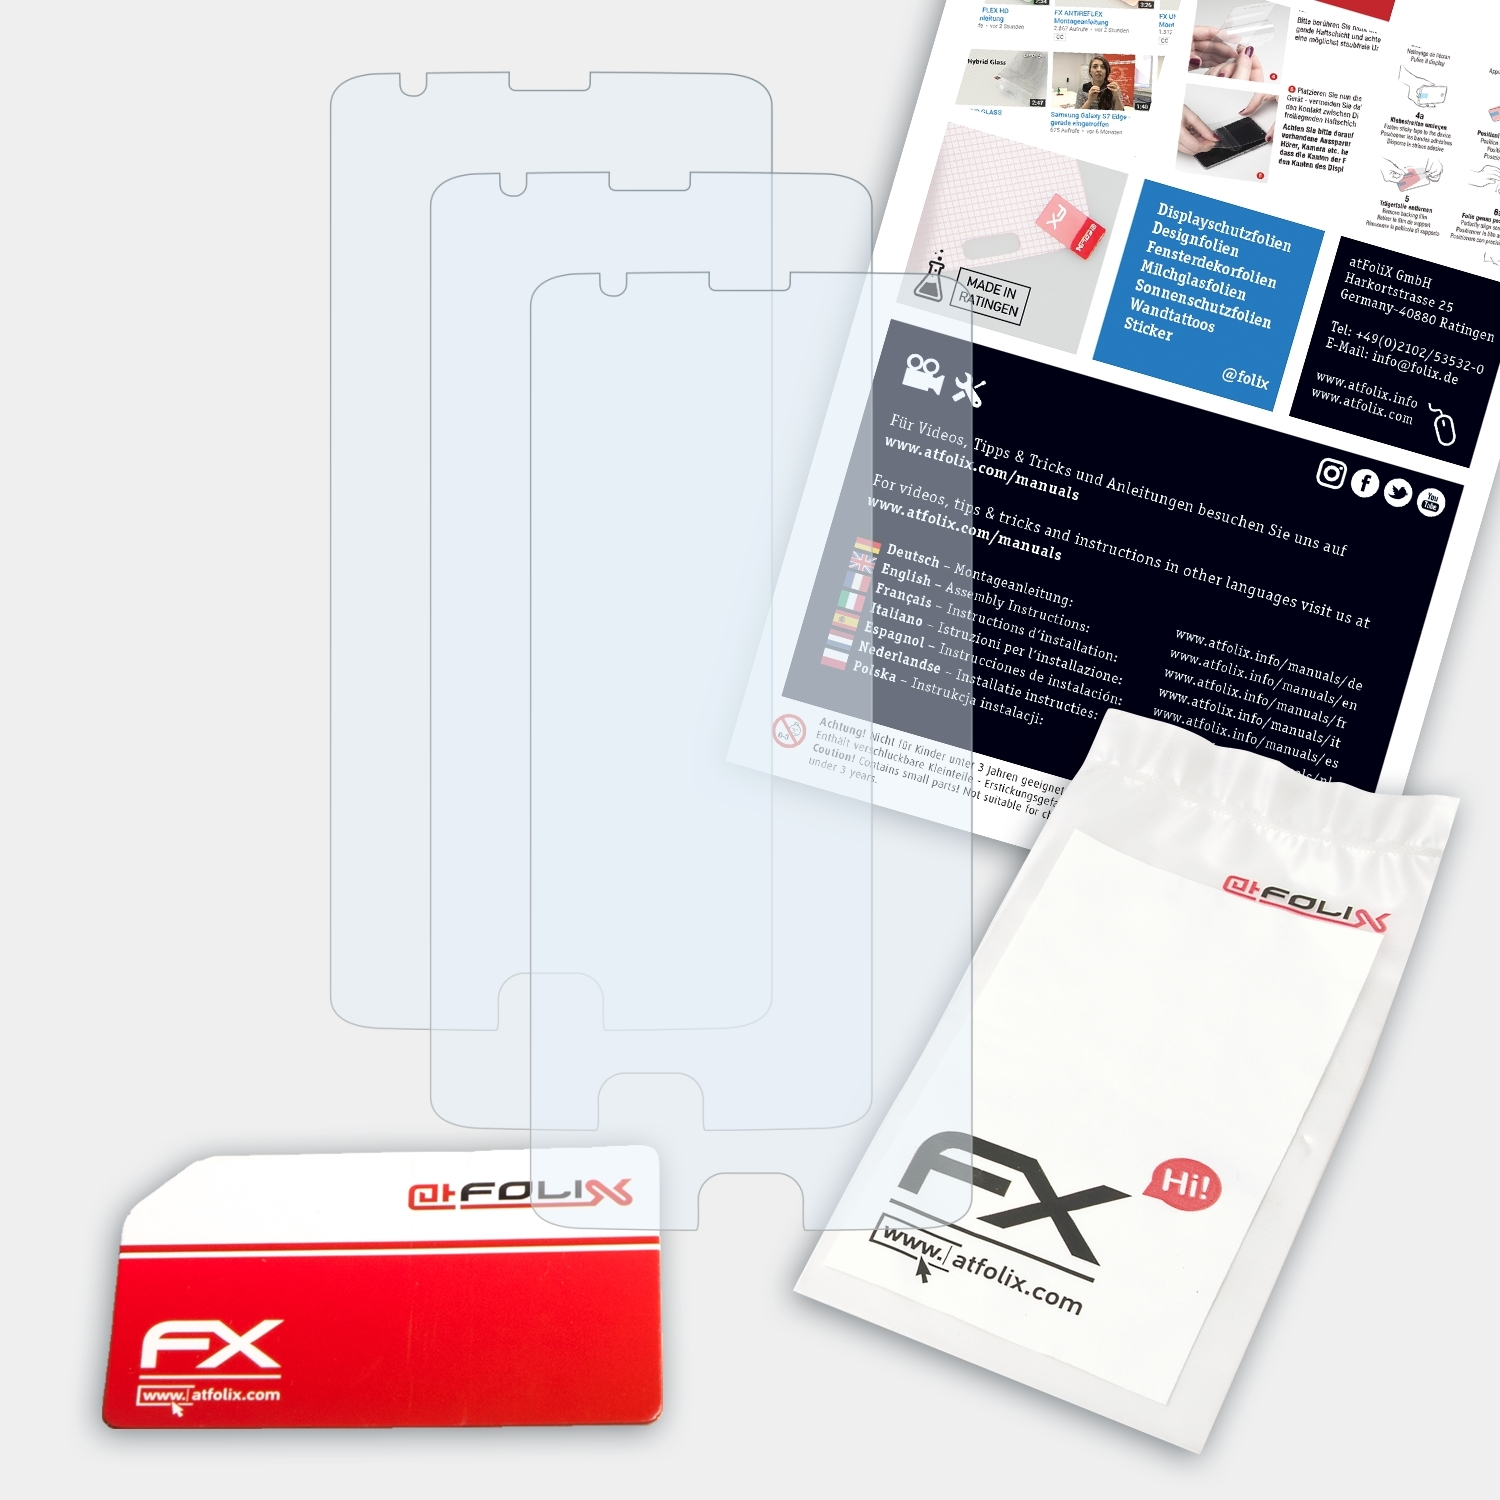 3x ATFOLIX Three) OnePlus Displayschutz(für FX-Clear